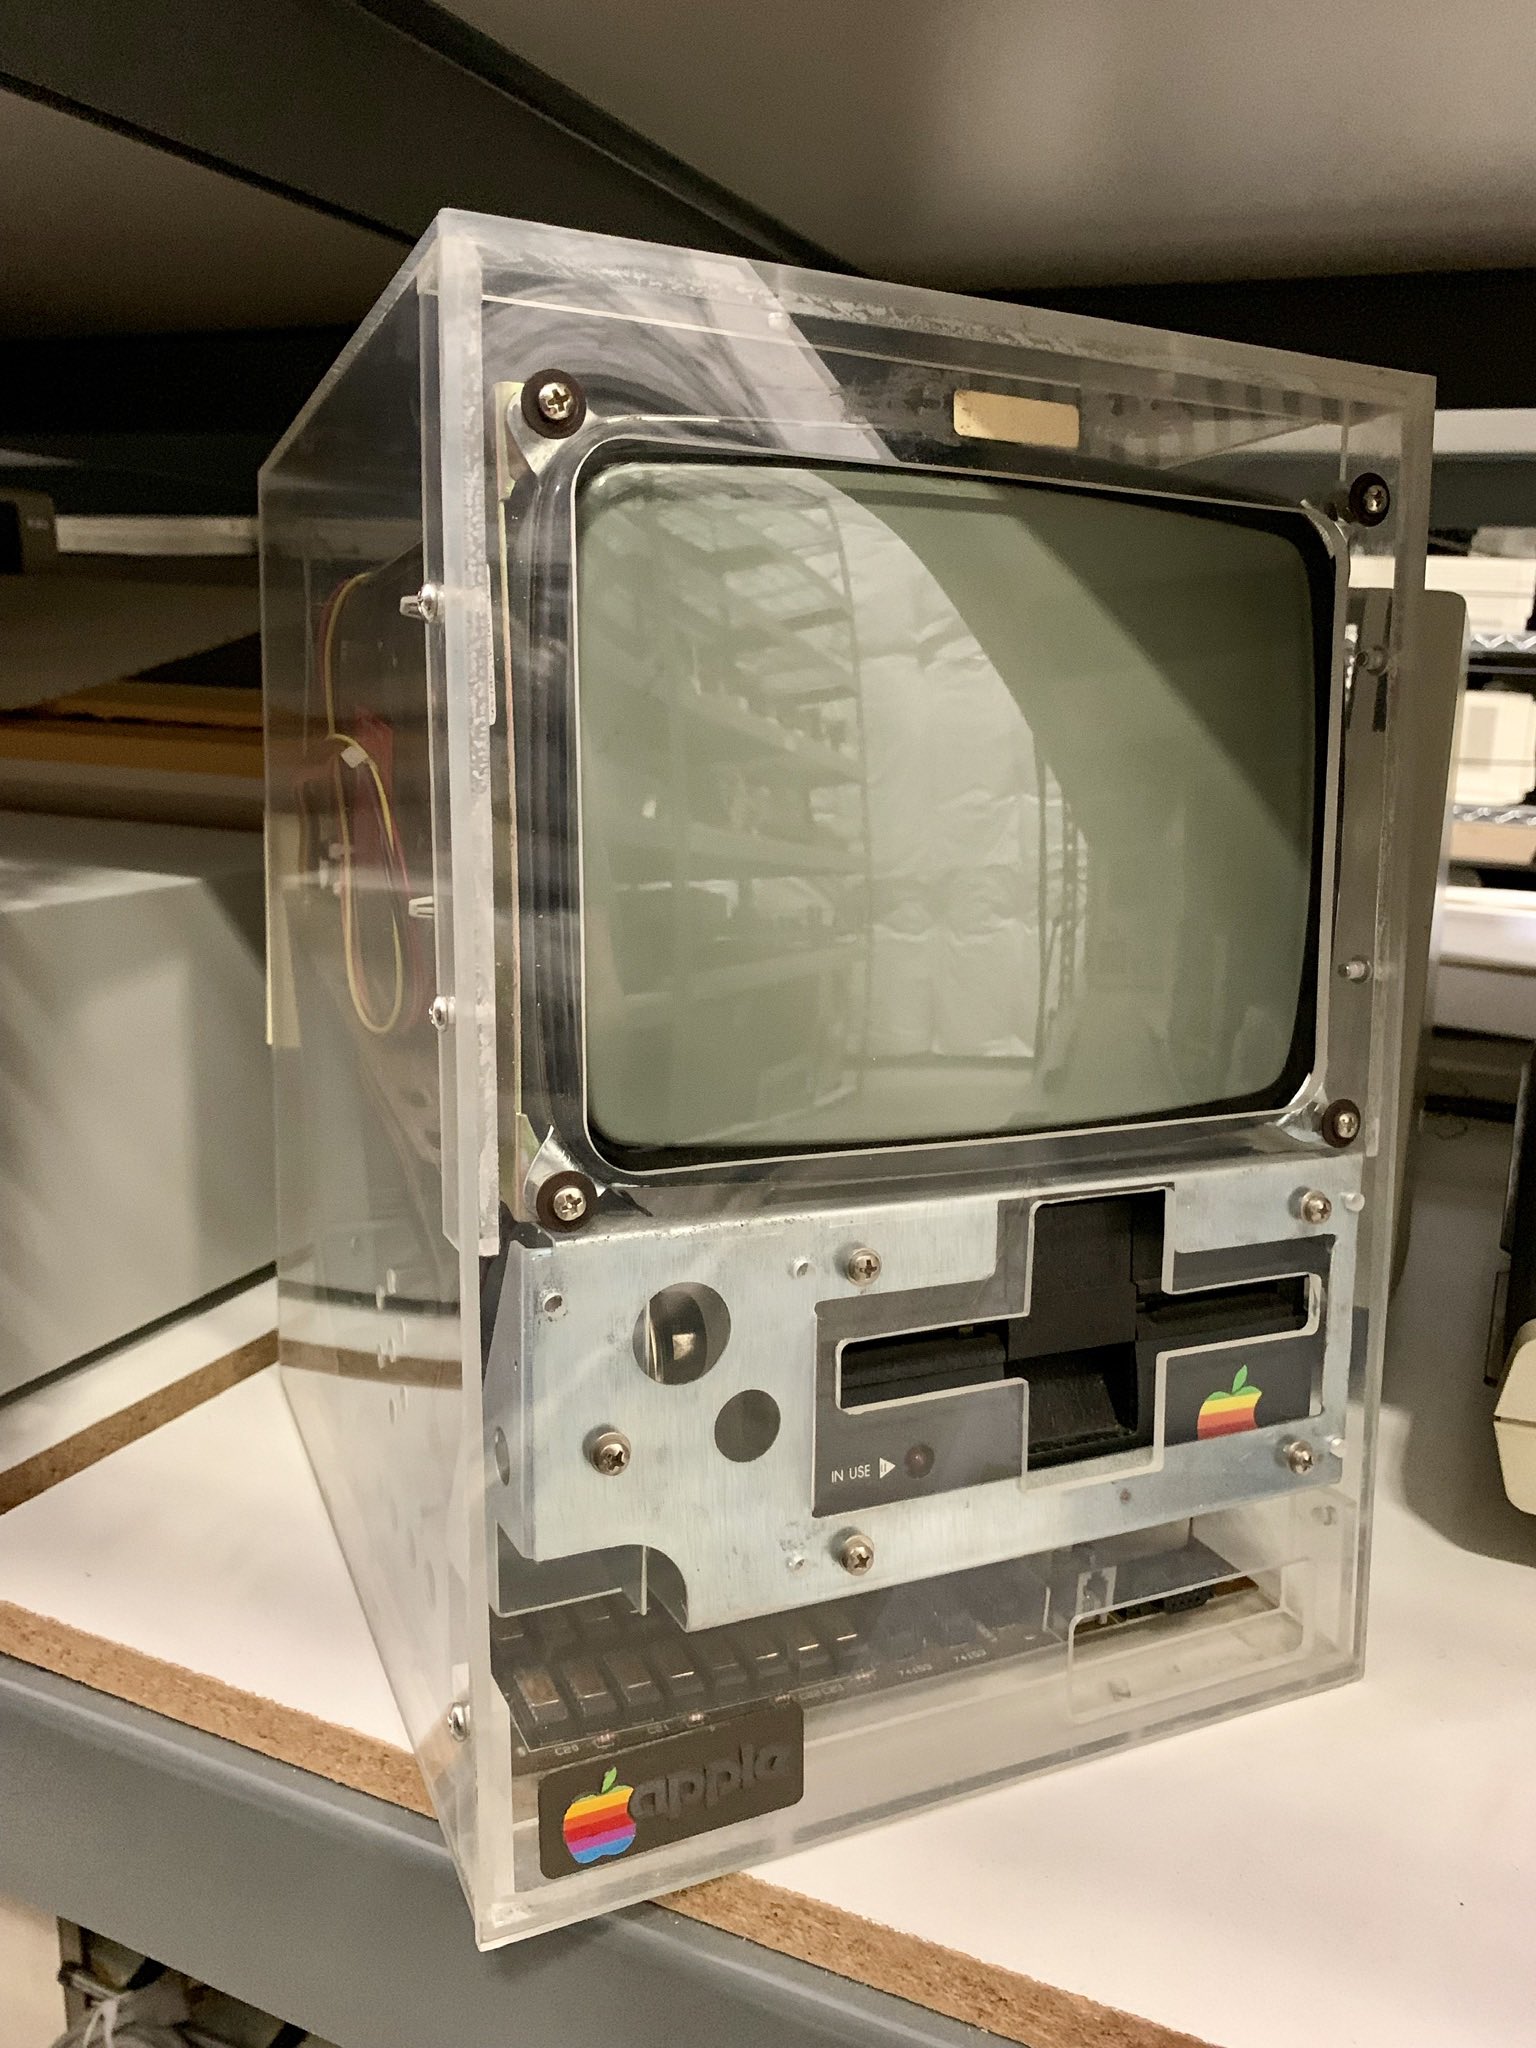 يُظهر النموذج الأولي المسرب أن شركة Apple قد جربت غلافًا شفافًا لجهاز Mac PC الذي تم إصداره لأول مرة في عام 1990